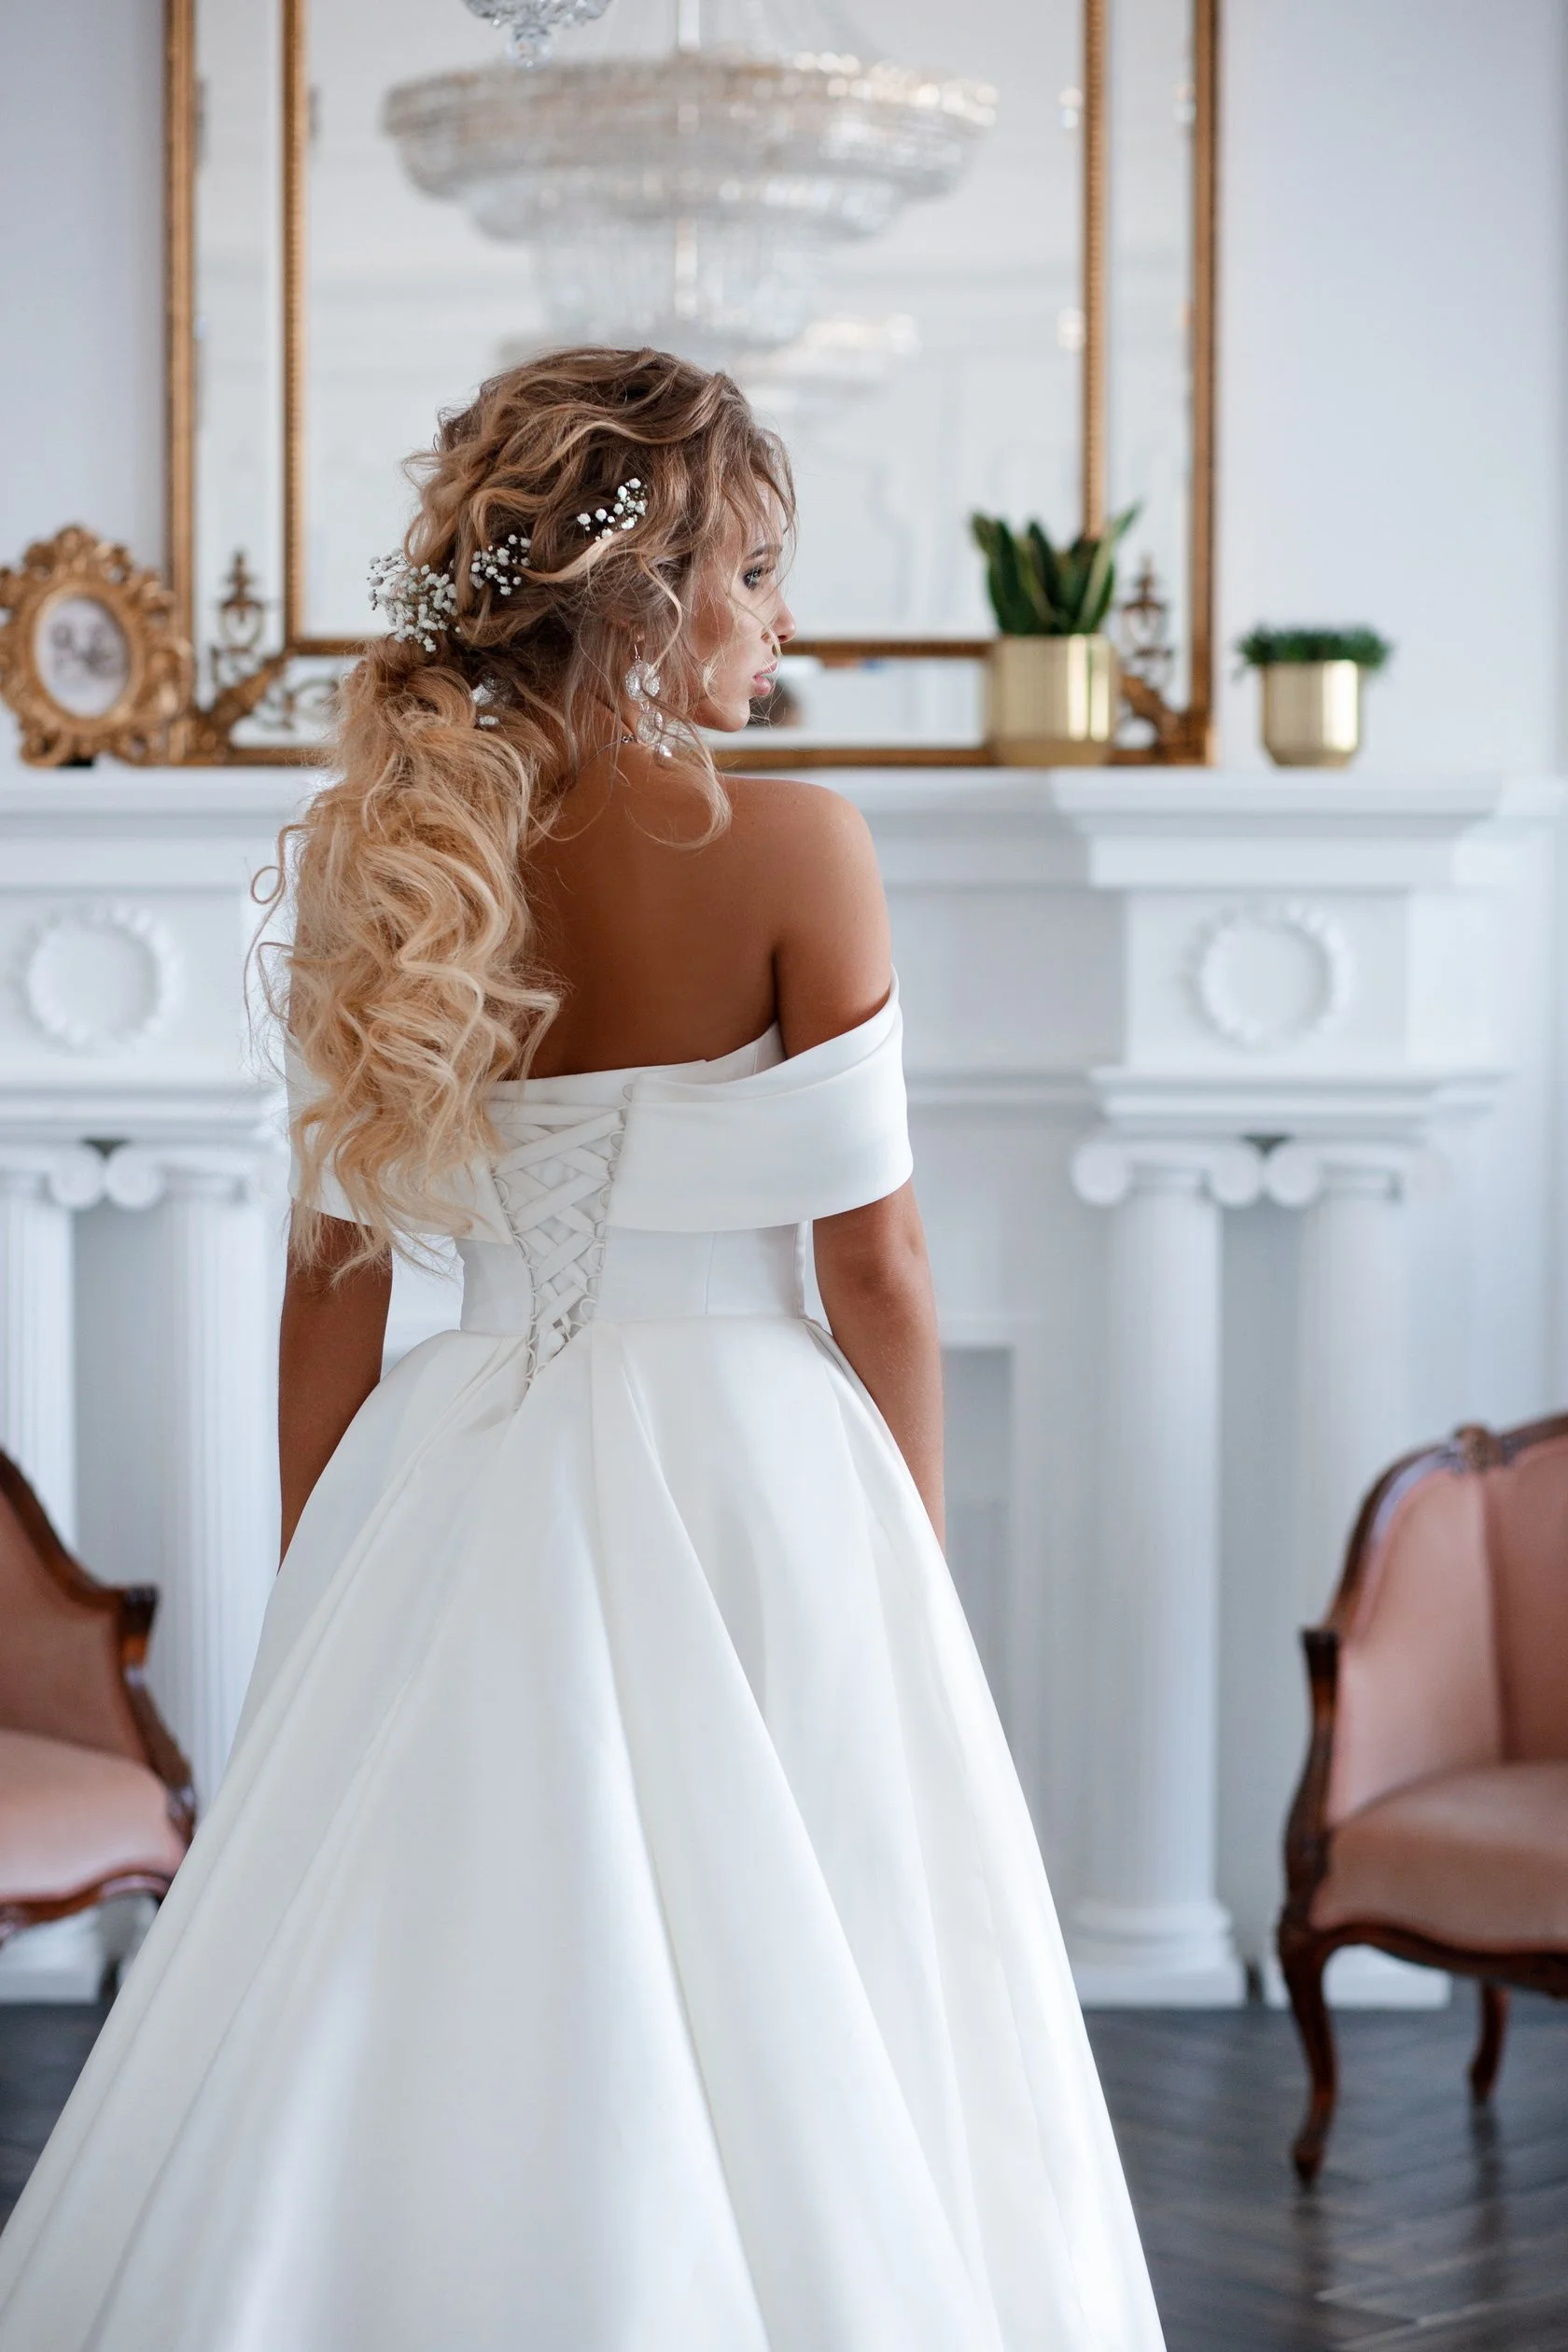 Свадебные прически 2019: фото лучших вариантов укладок для невесты - фото 438891